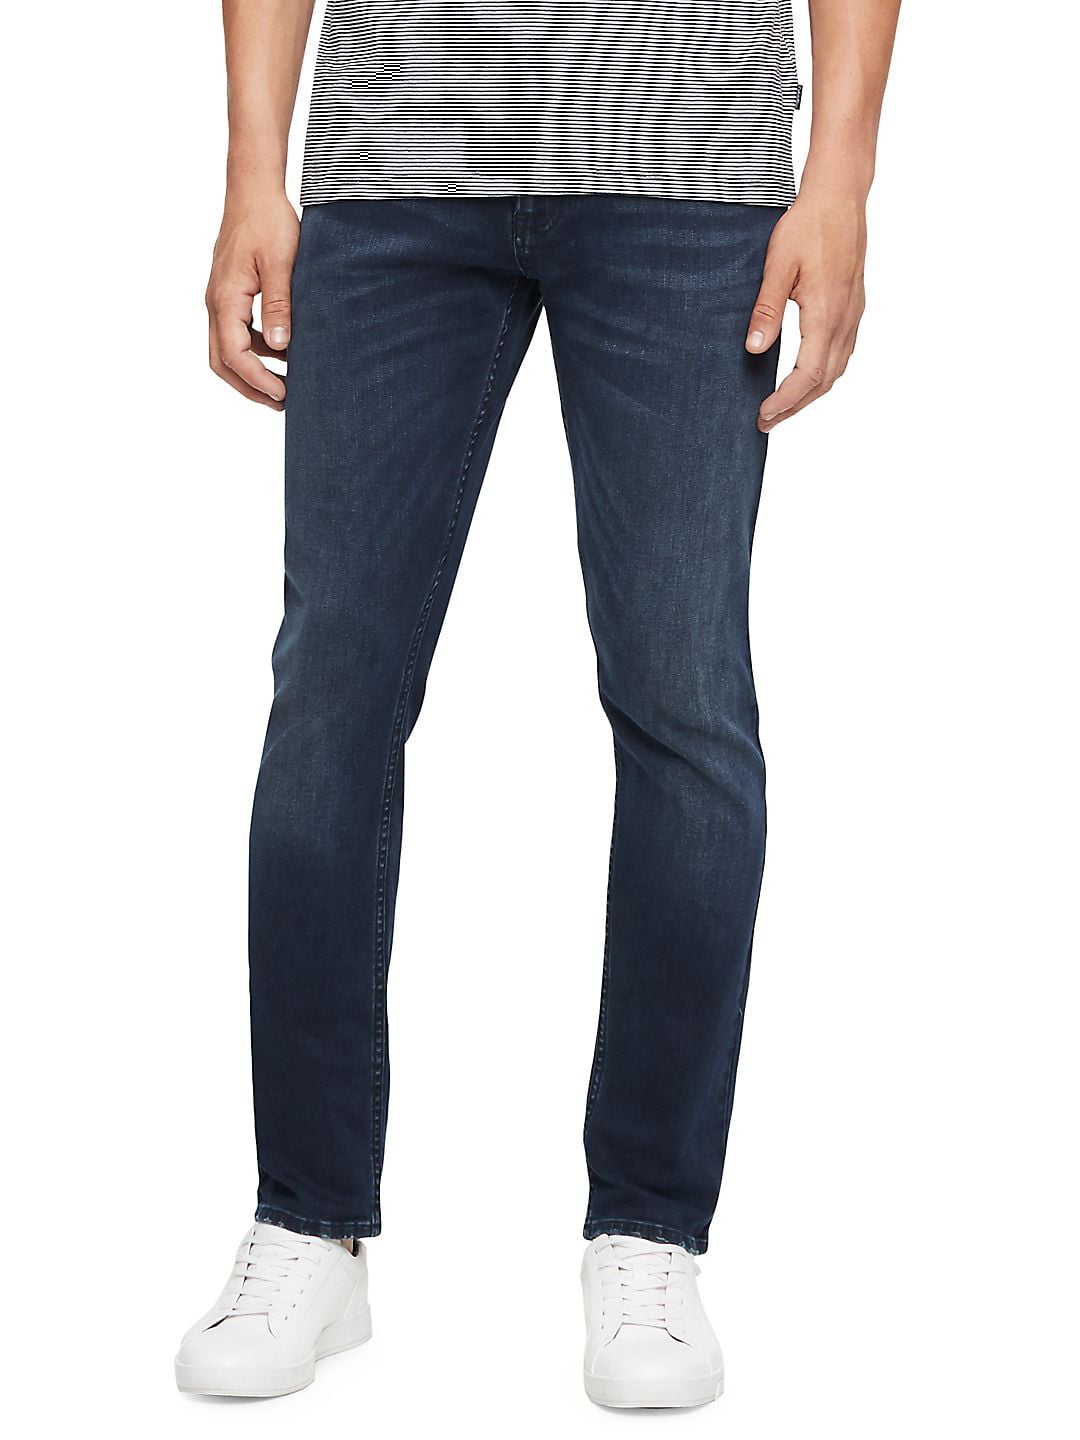 CKJ 035 Straight-Fit Jeans